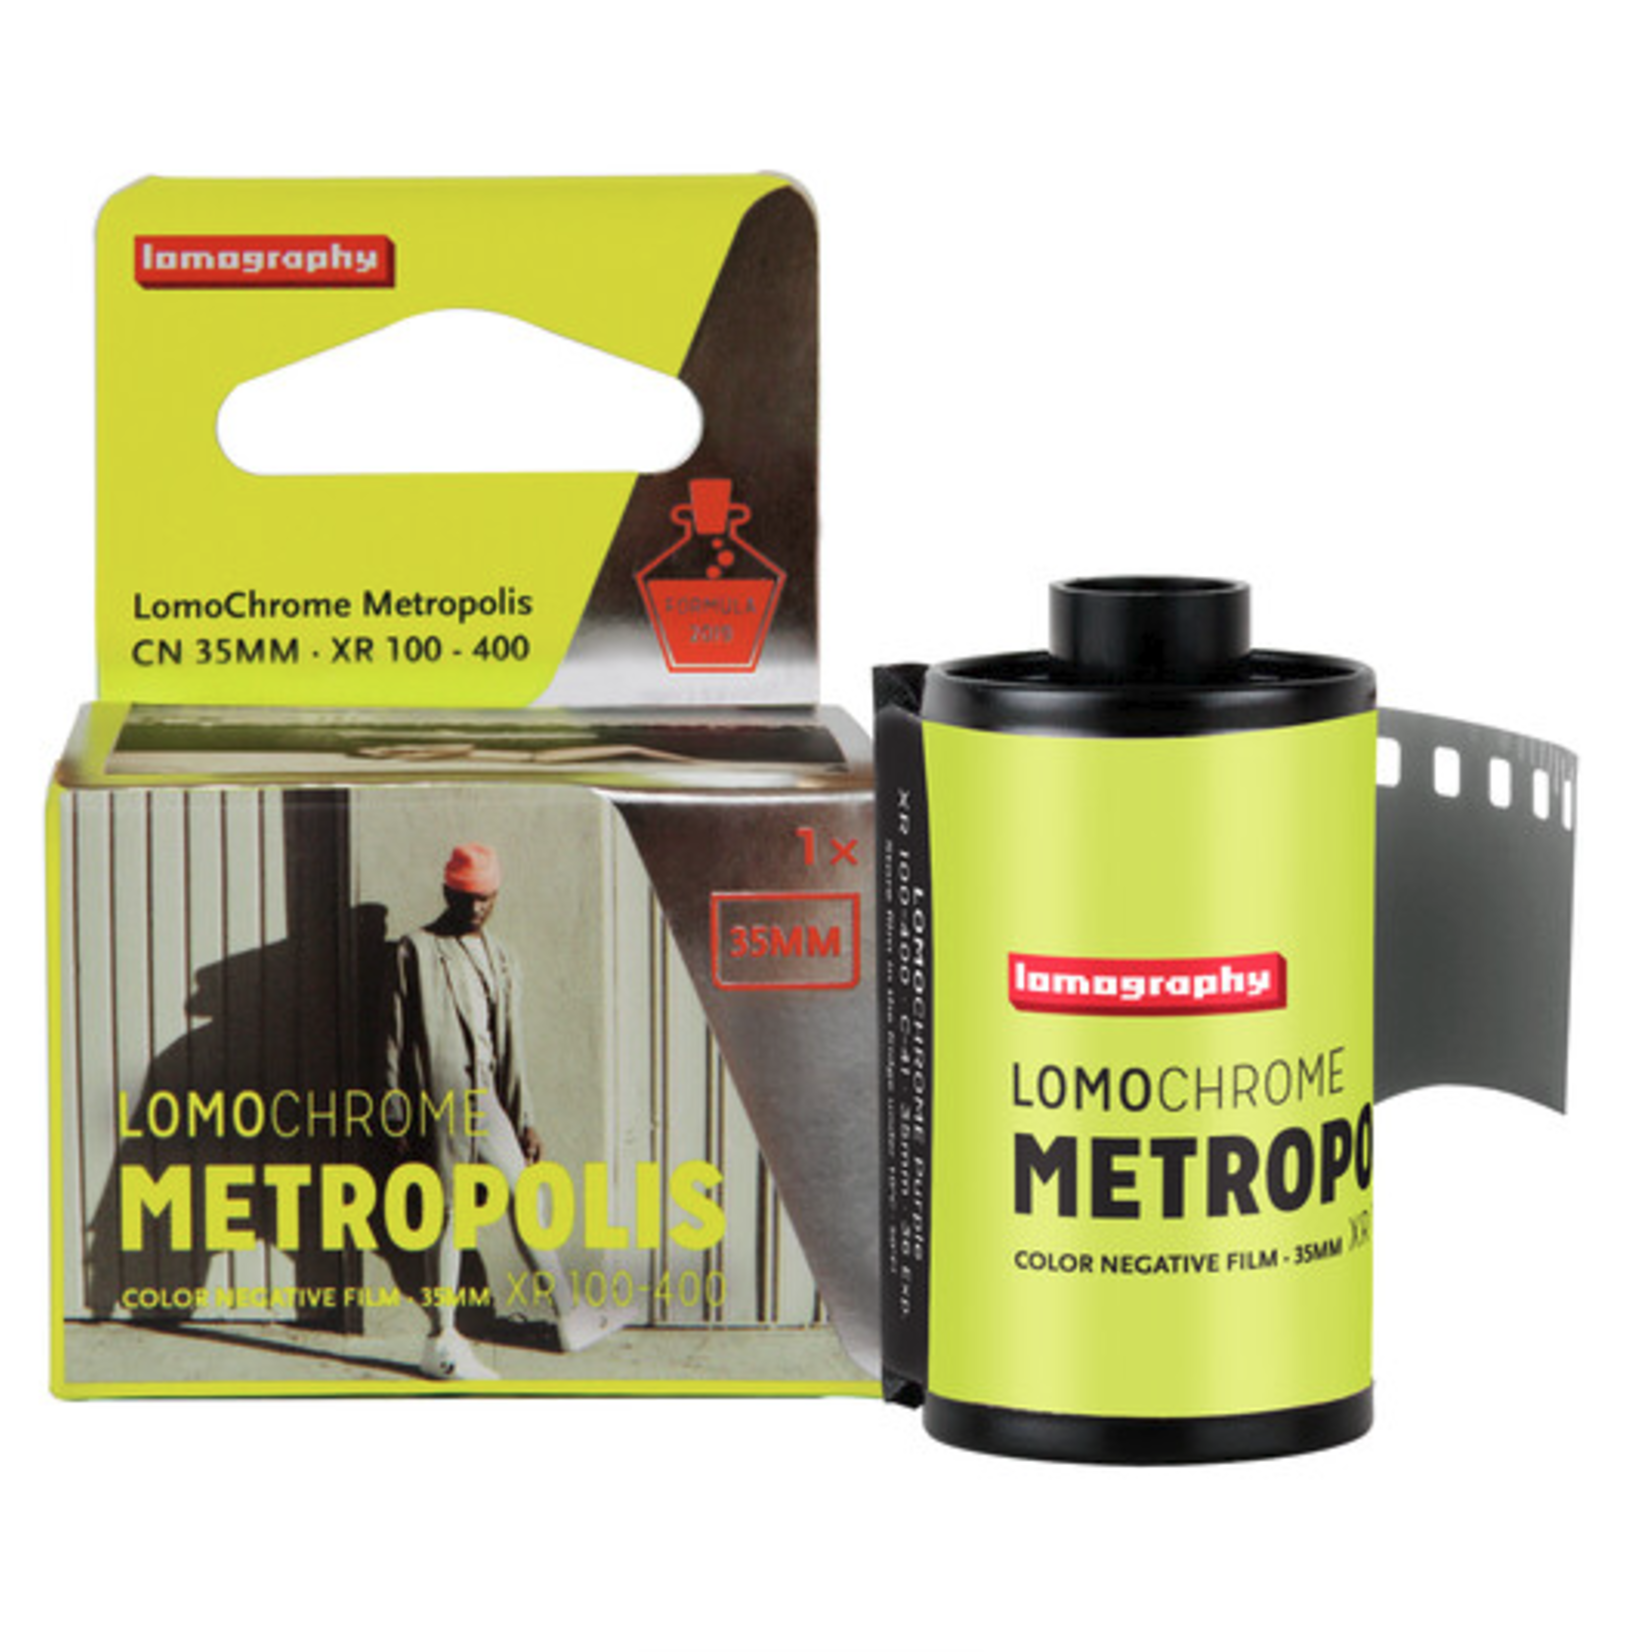 Lomography Lomography LomoChrome Metropolis 100-400 Color Negative Film (35mm Roll Film, 36 Exposures)